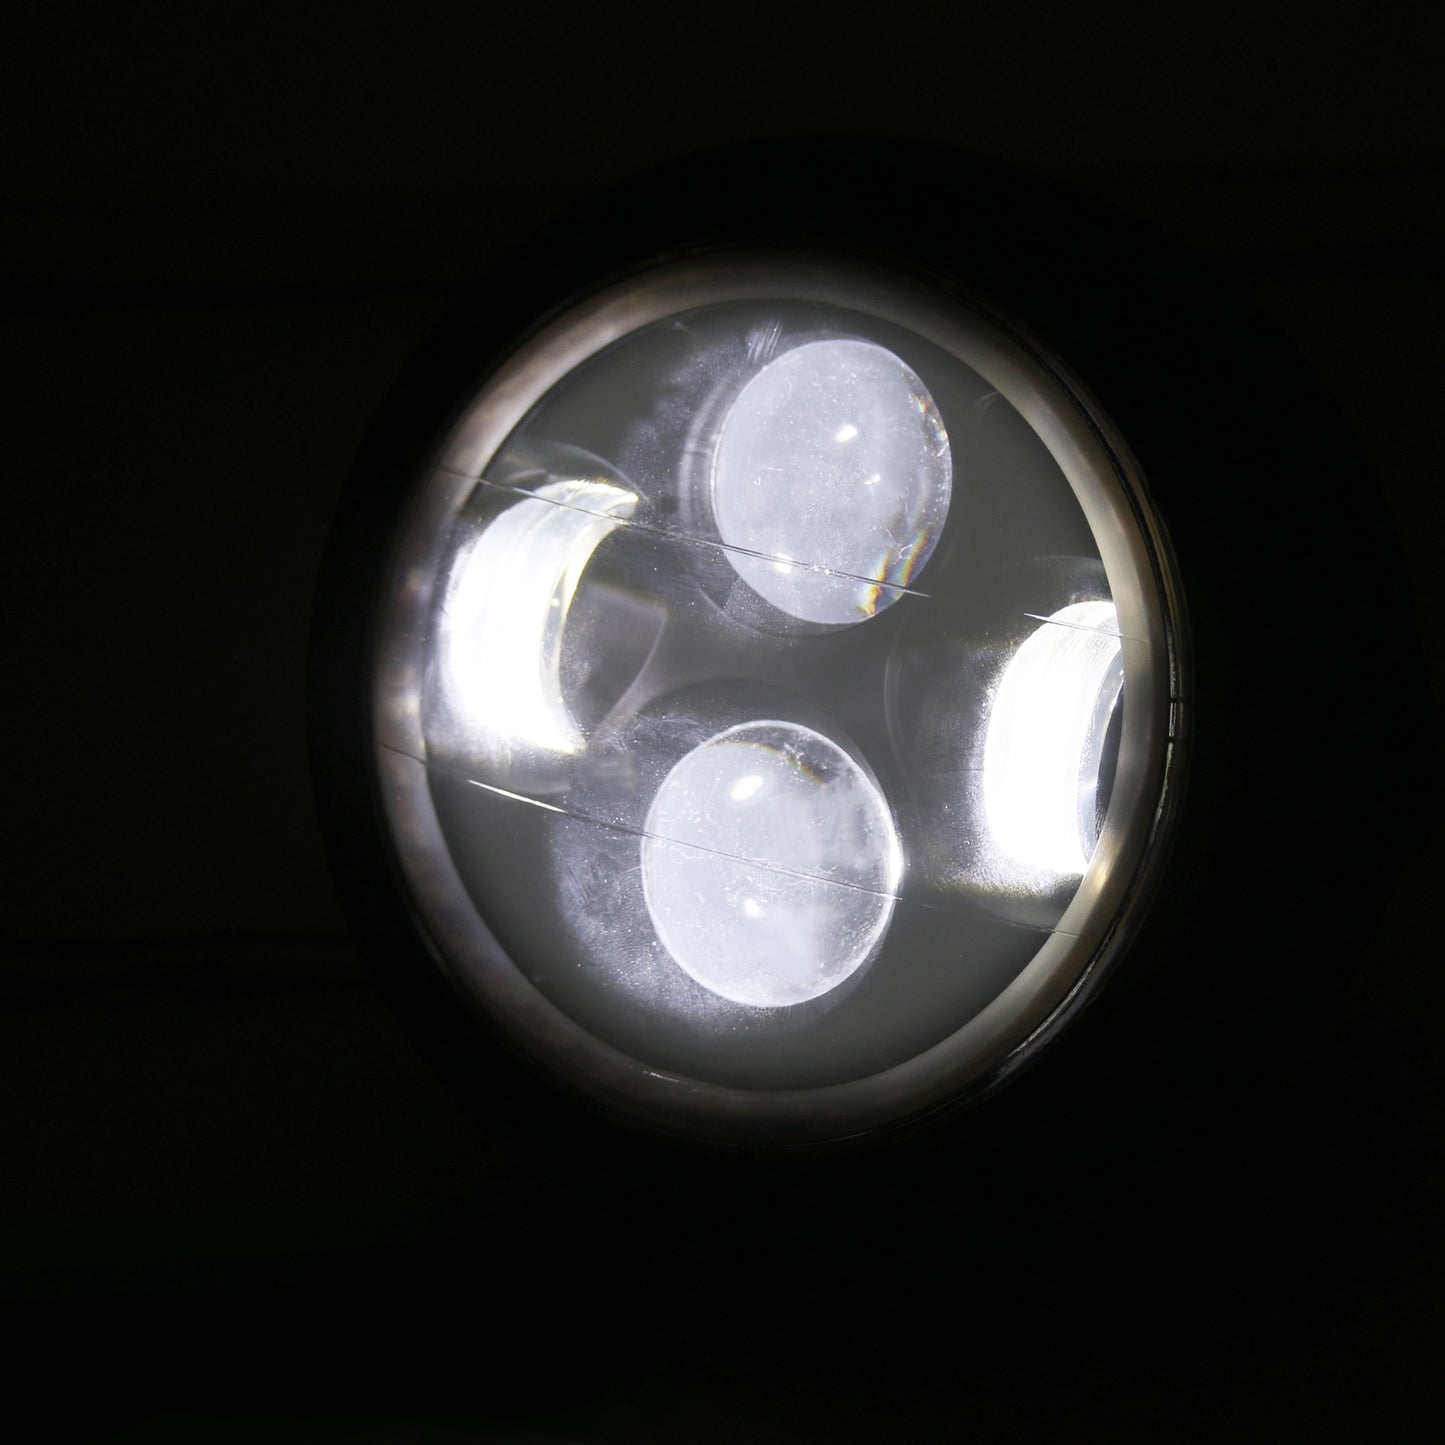 6 1/2" Zoll LED Scheinwerfer Hi/Lo Halo Licht für Motorrad Universal